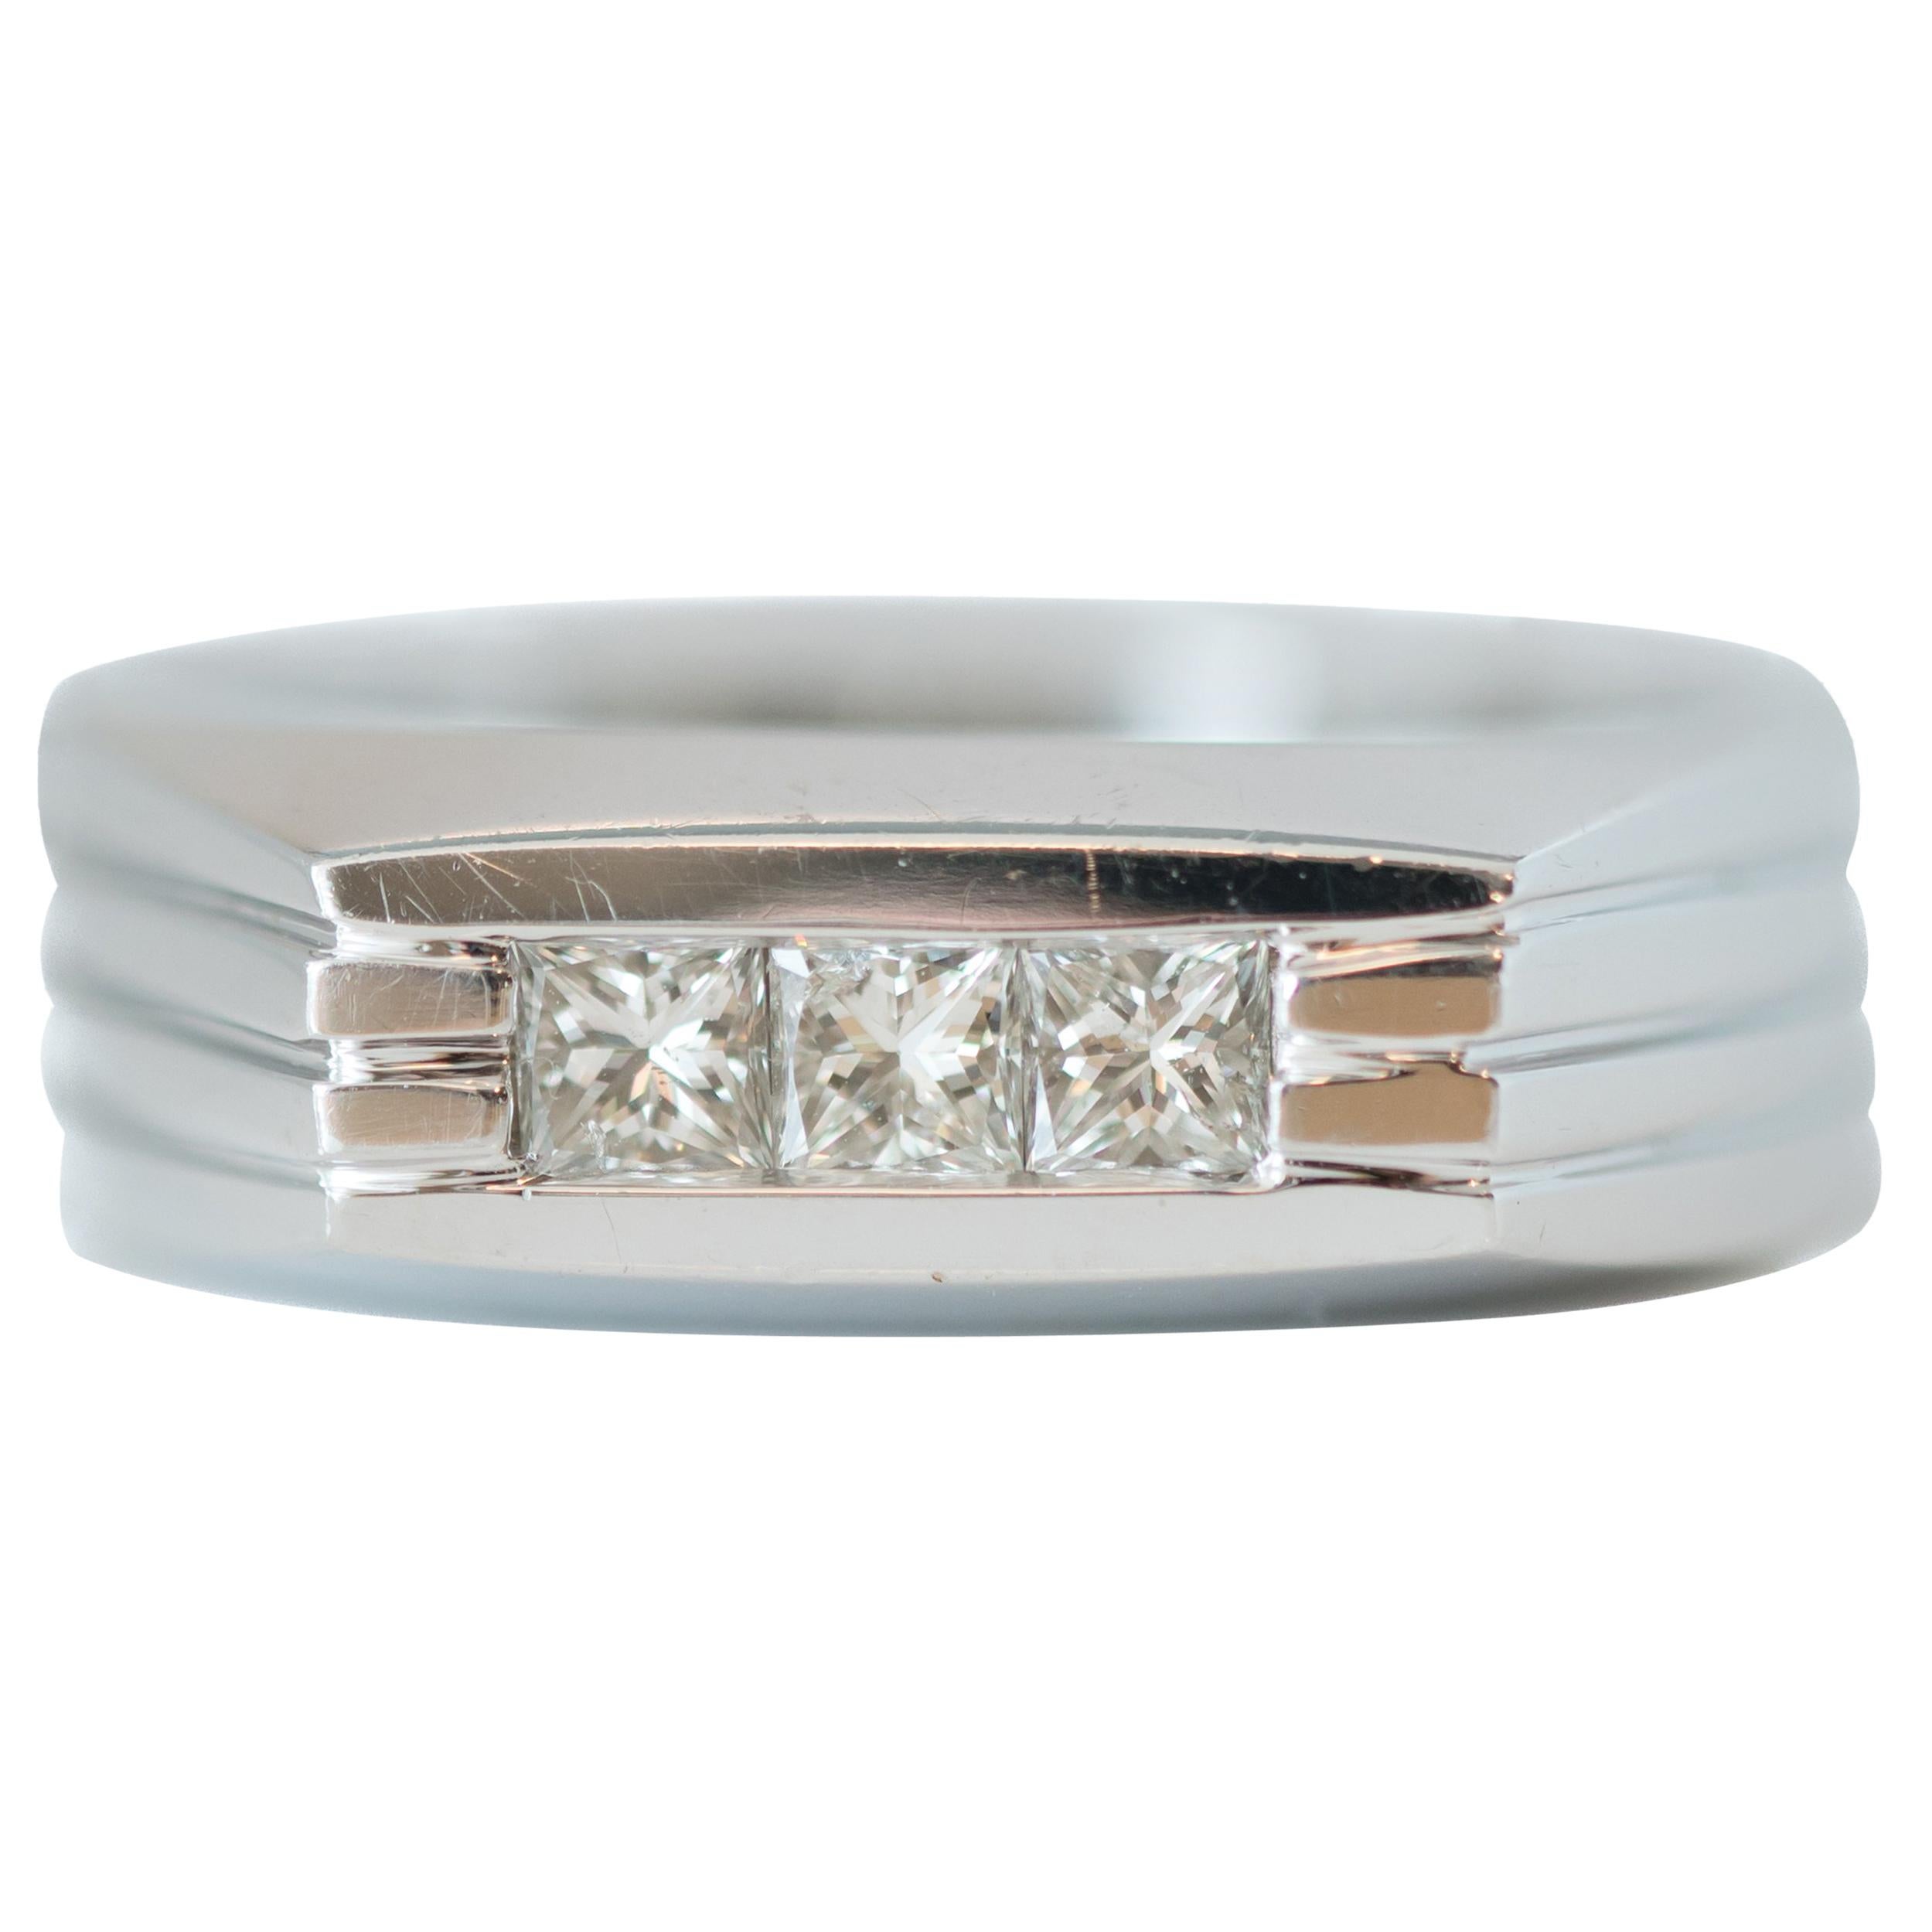 1950s 0.35 Carat Diamond and 14 Karat White Gold Band Ring